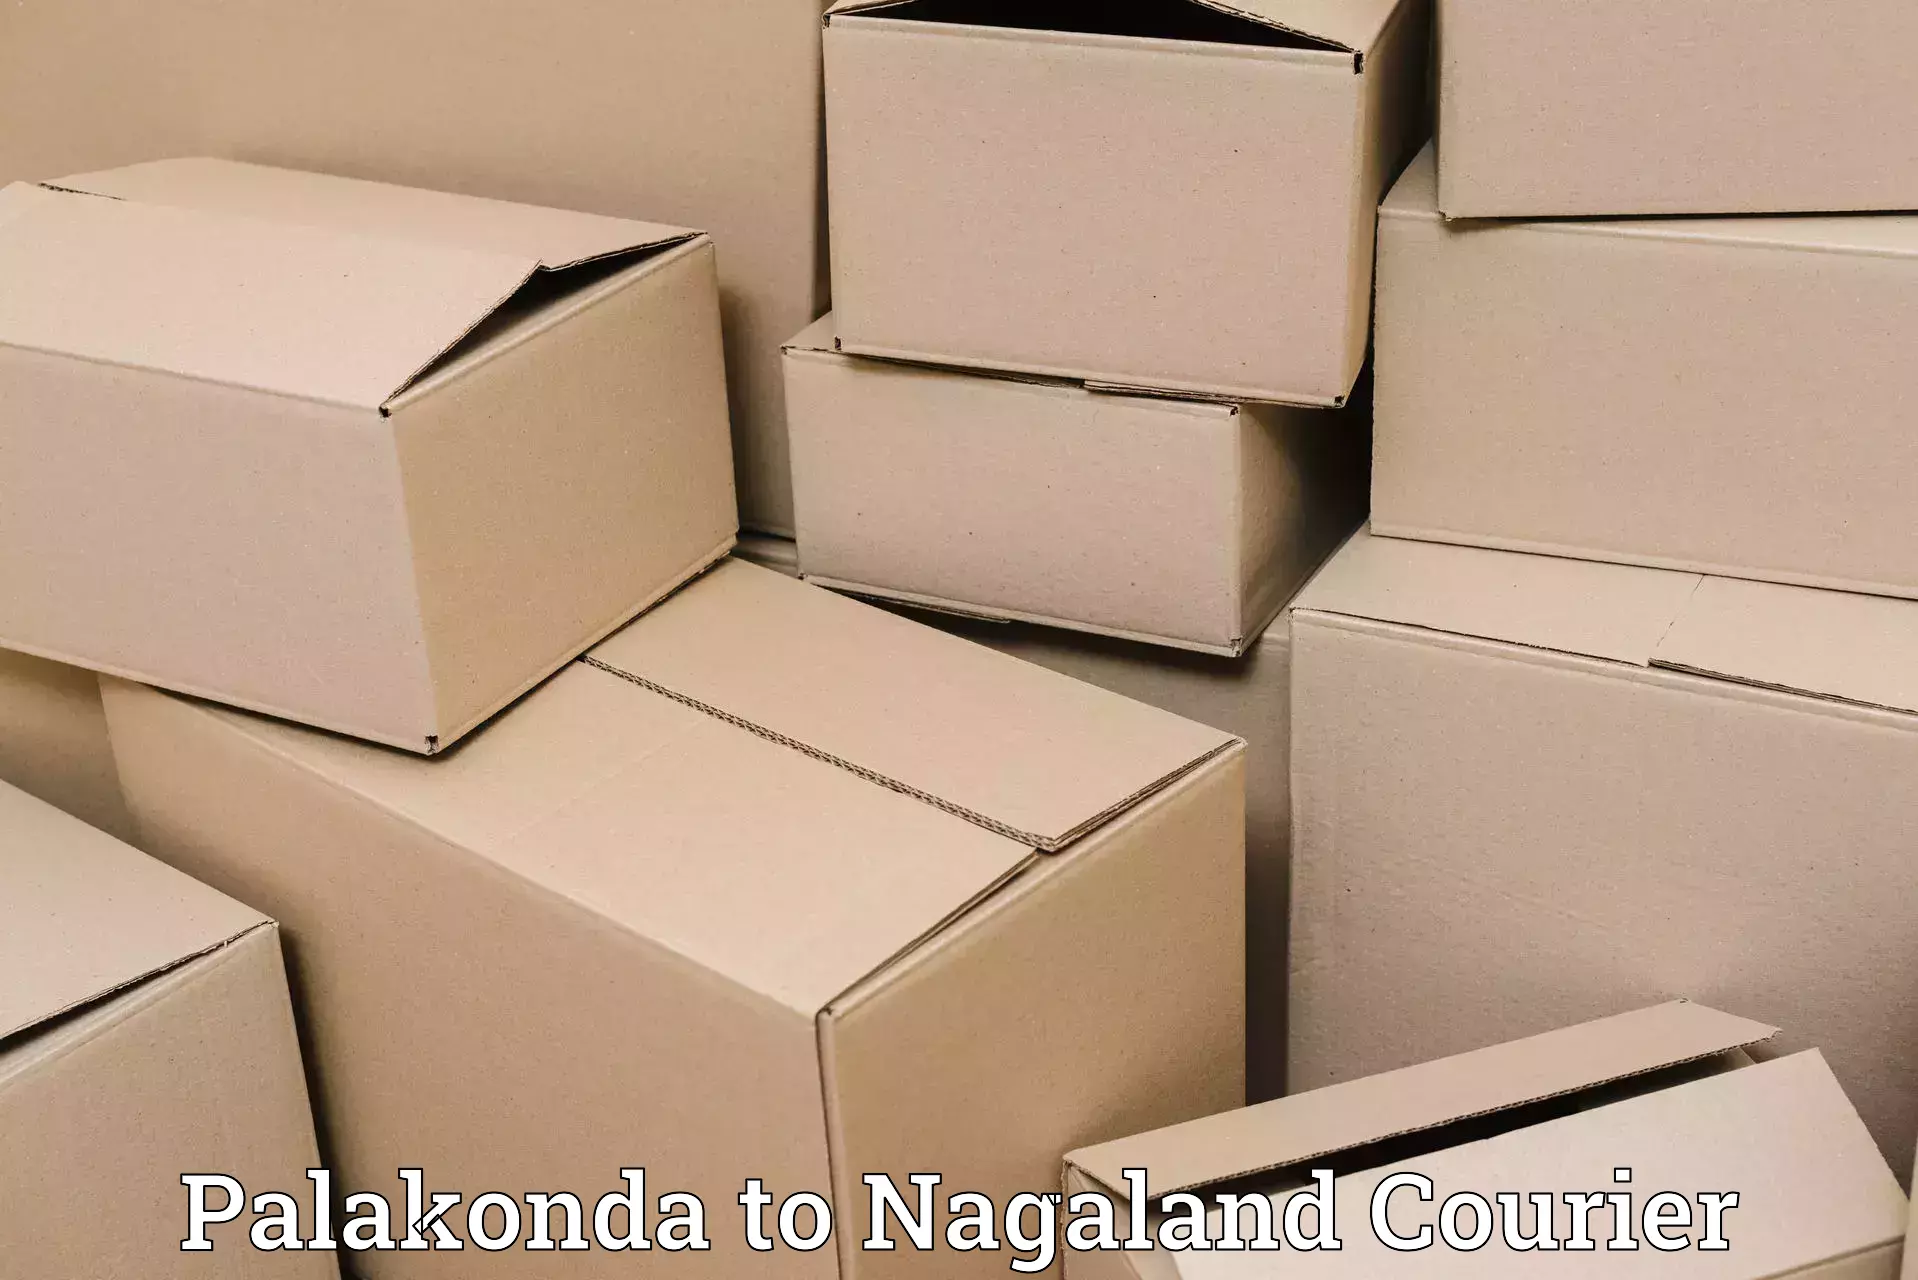 Shipping and handling Palakonda to Nagaland